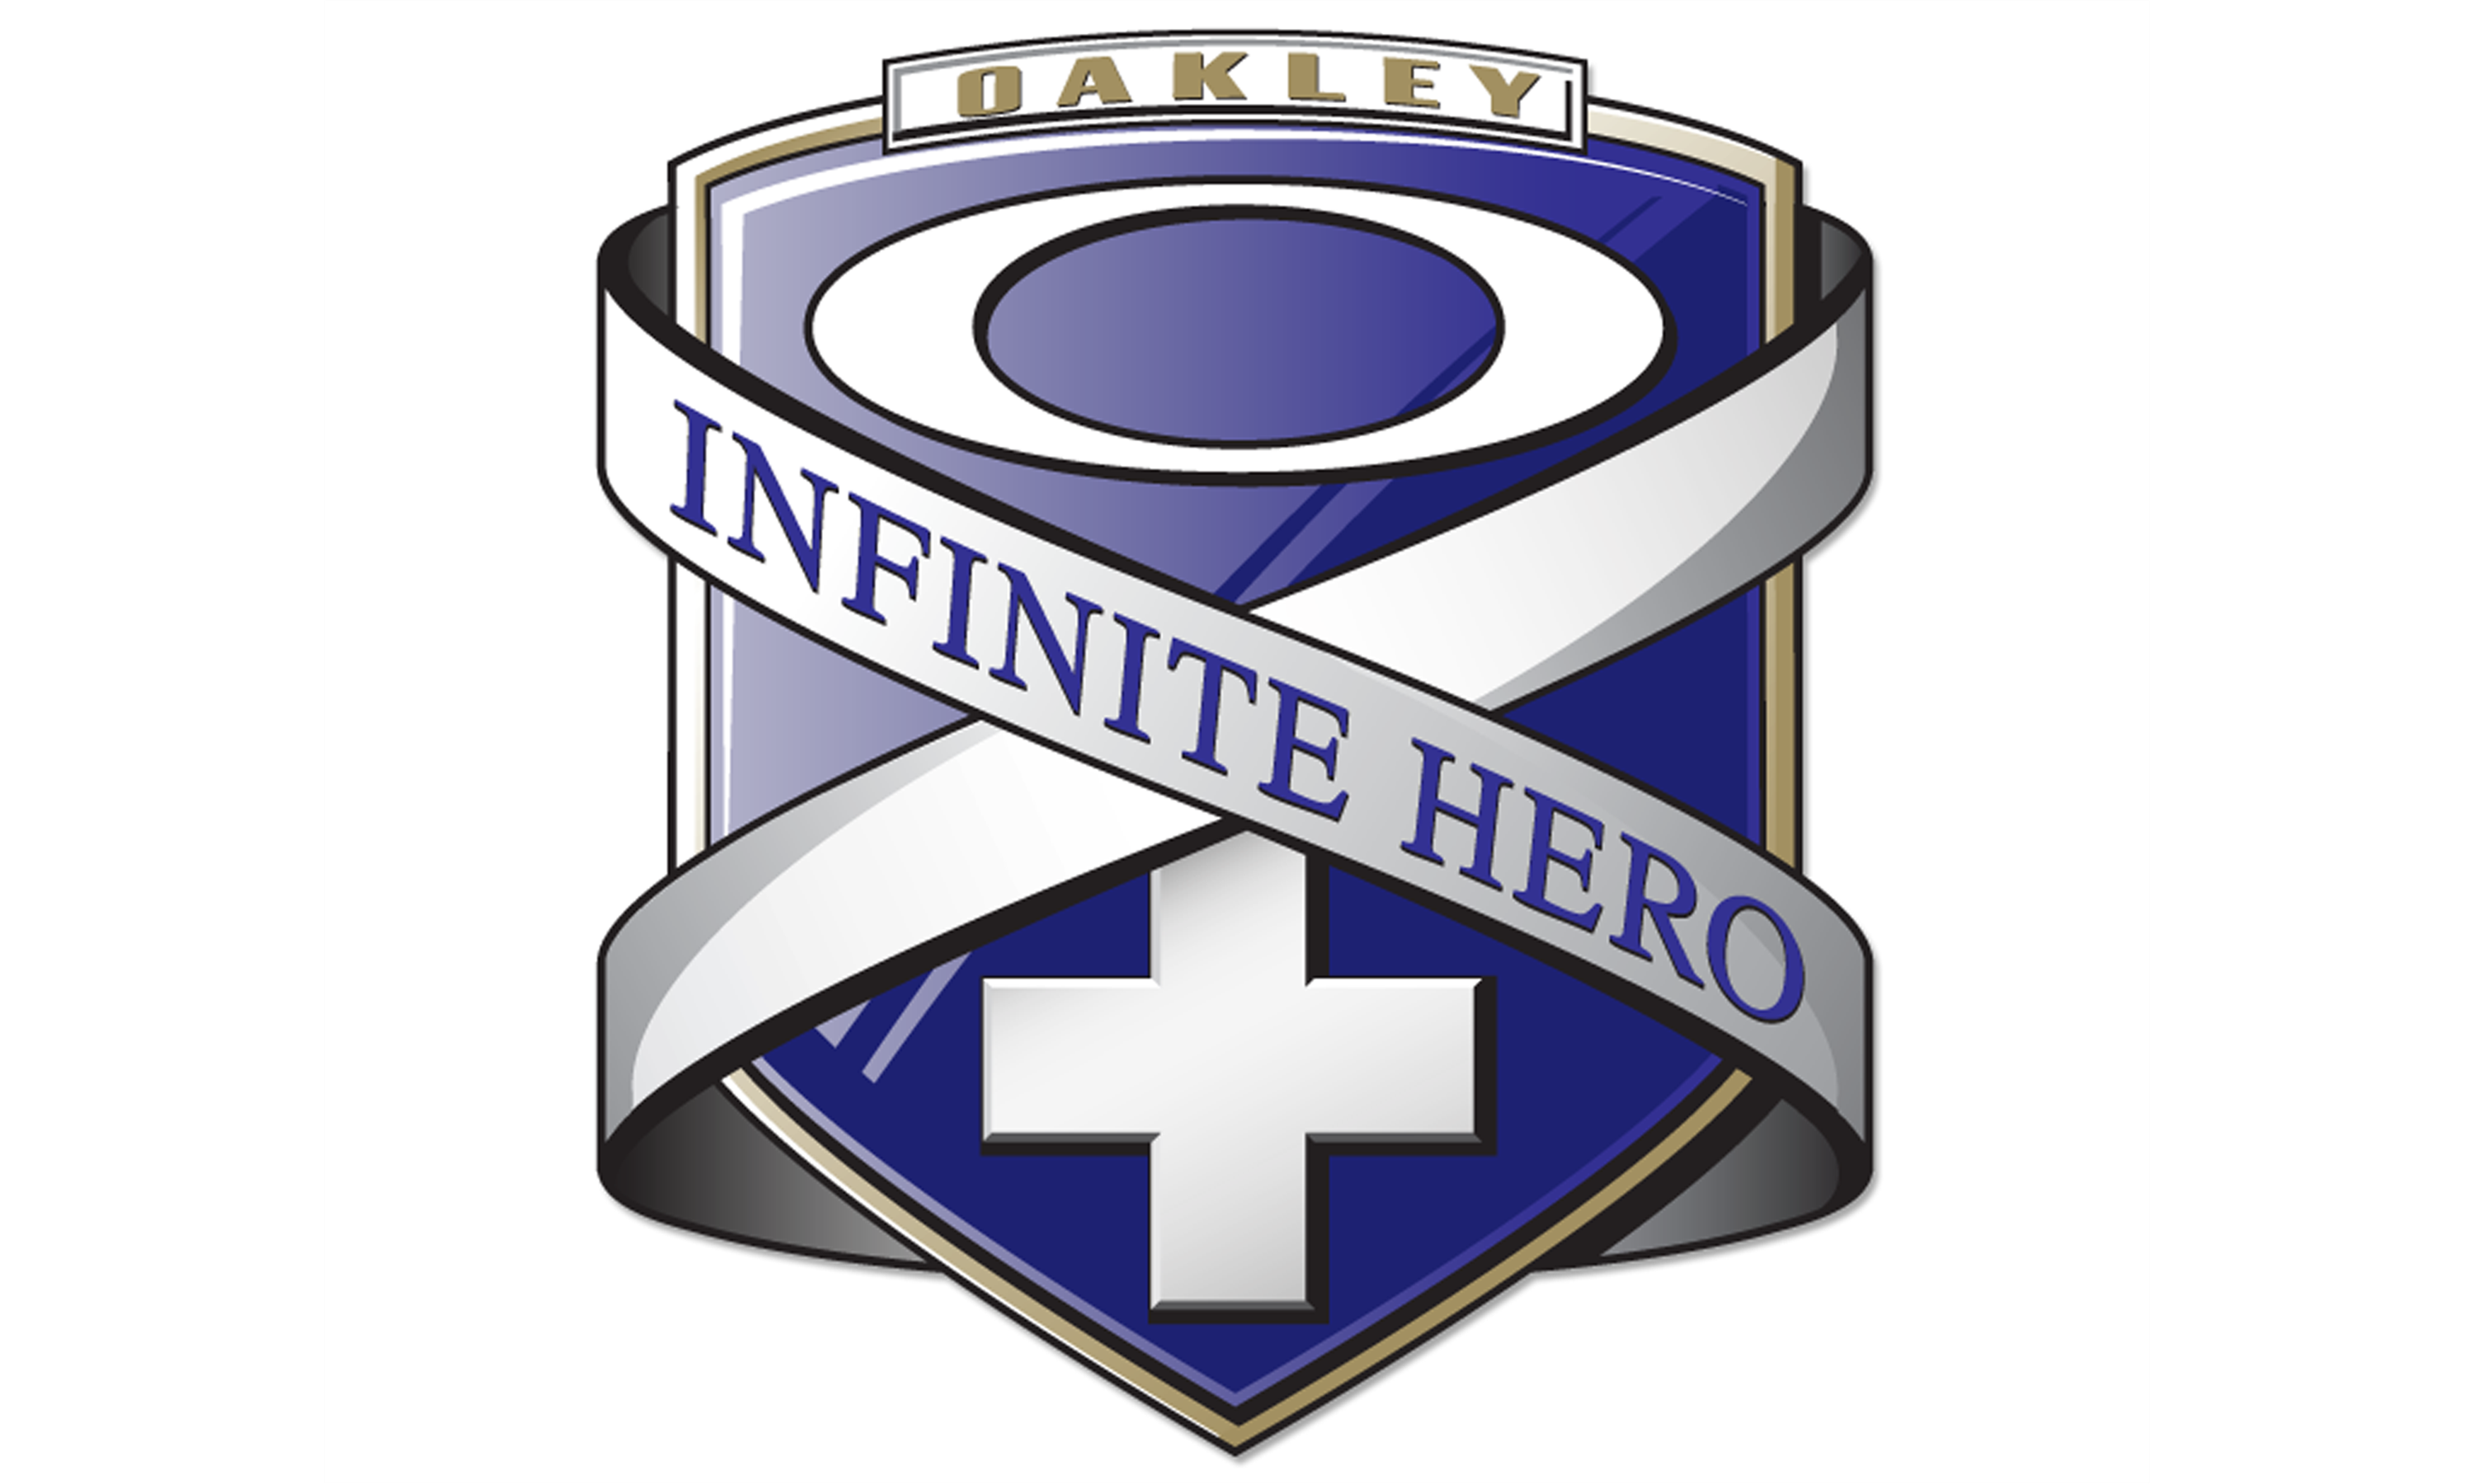 Oakley ® Infinite Hero Sticker